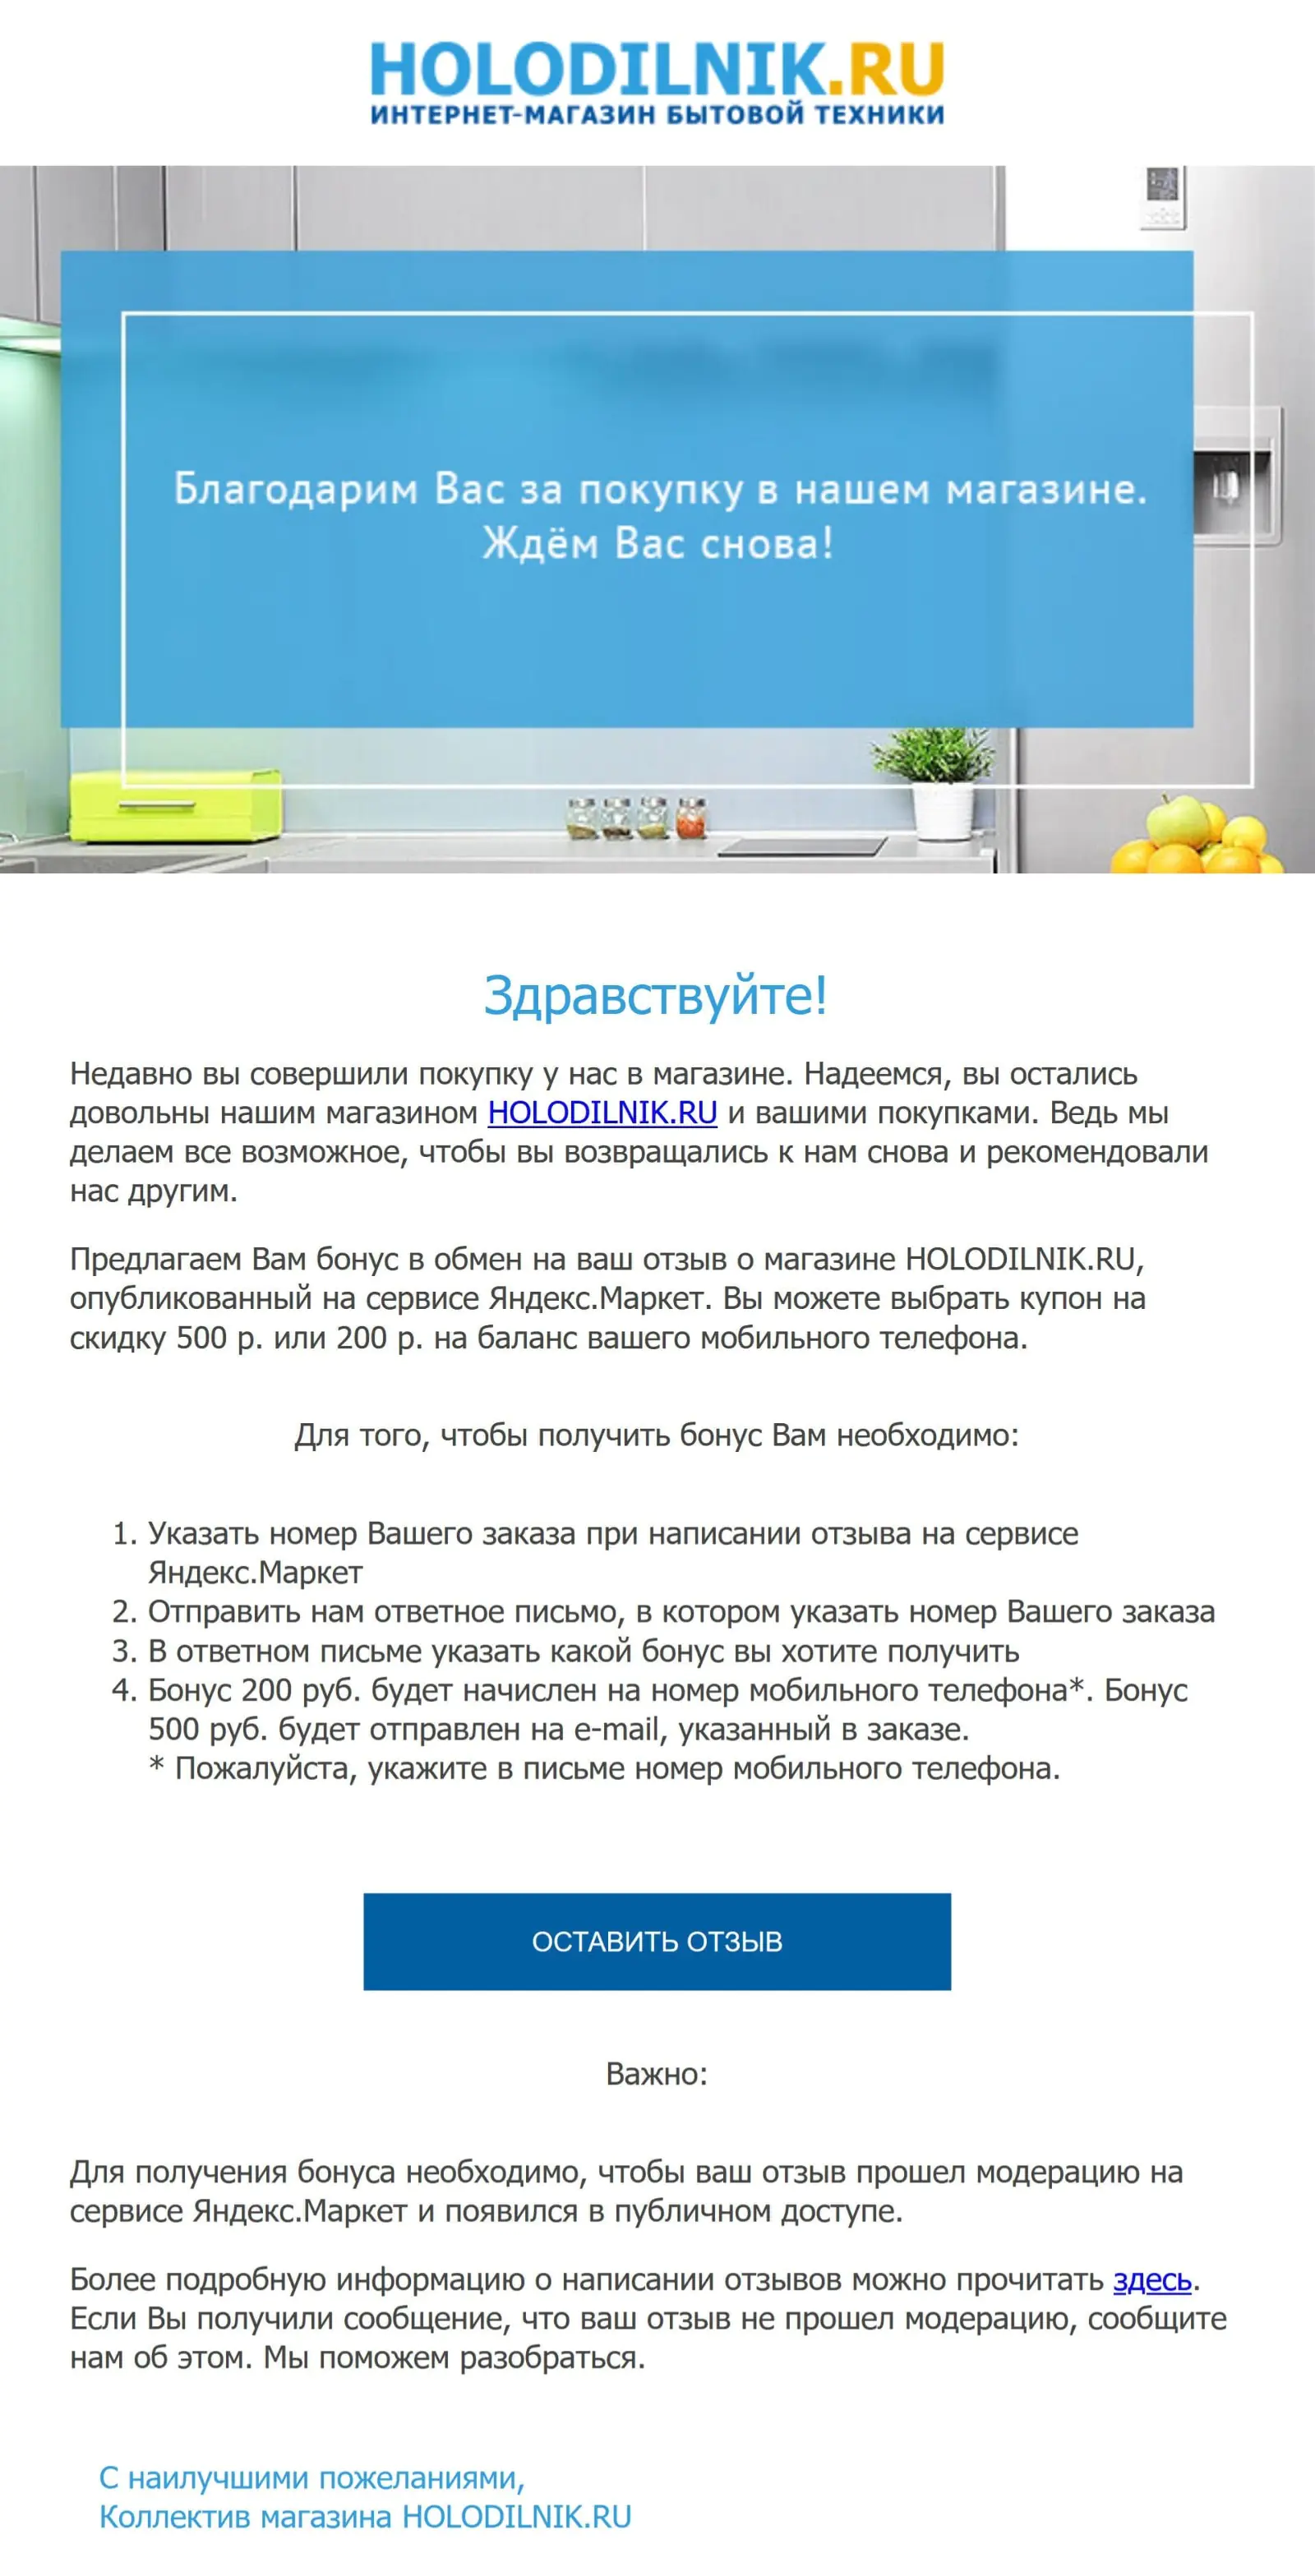 Чтобы клиенты оставляли отзыв на Яндекс.Маркете, дарим на выбор скидку или пополнение баланса телефона 